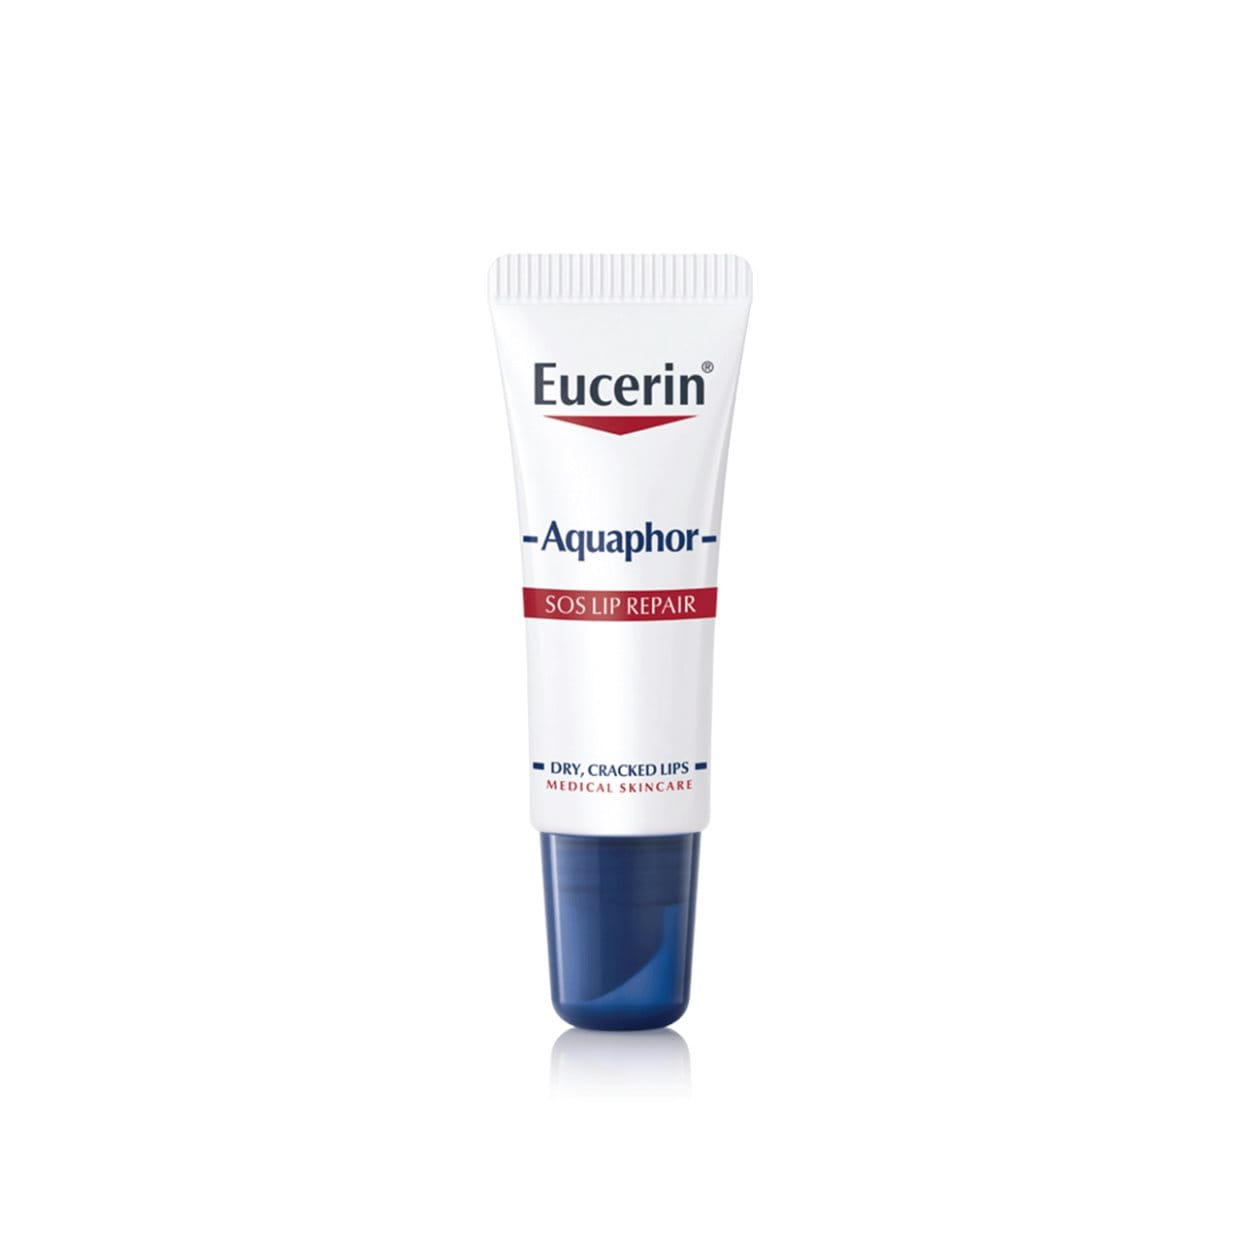 Eucerin Aquaphor Успокаивающий восстанавливающий бальзам для губ